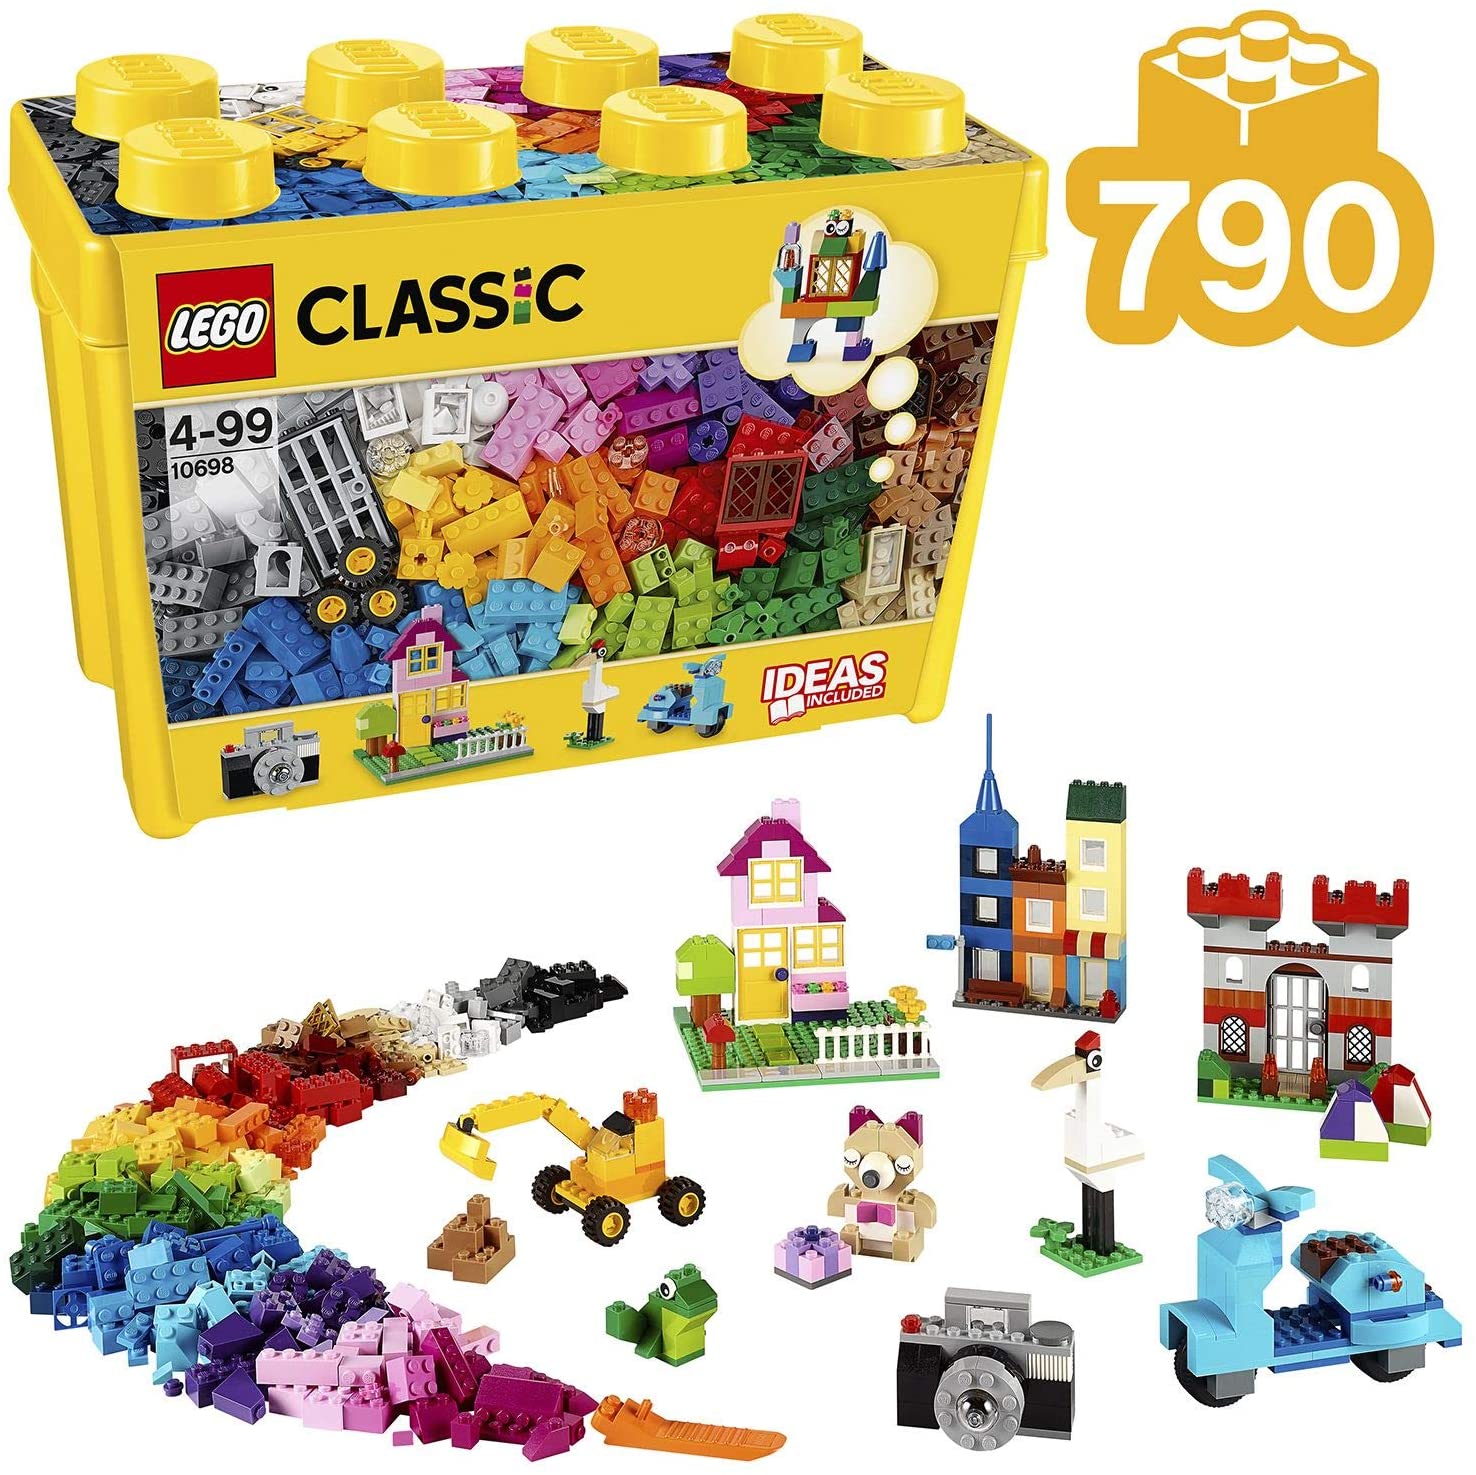 【レゴ (LEGO) 】クラシック 黄色のアイデアボックス スペシャル 10698